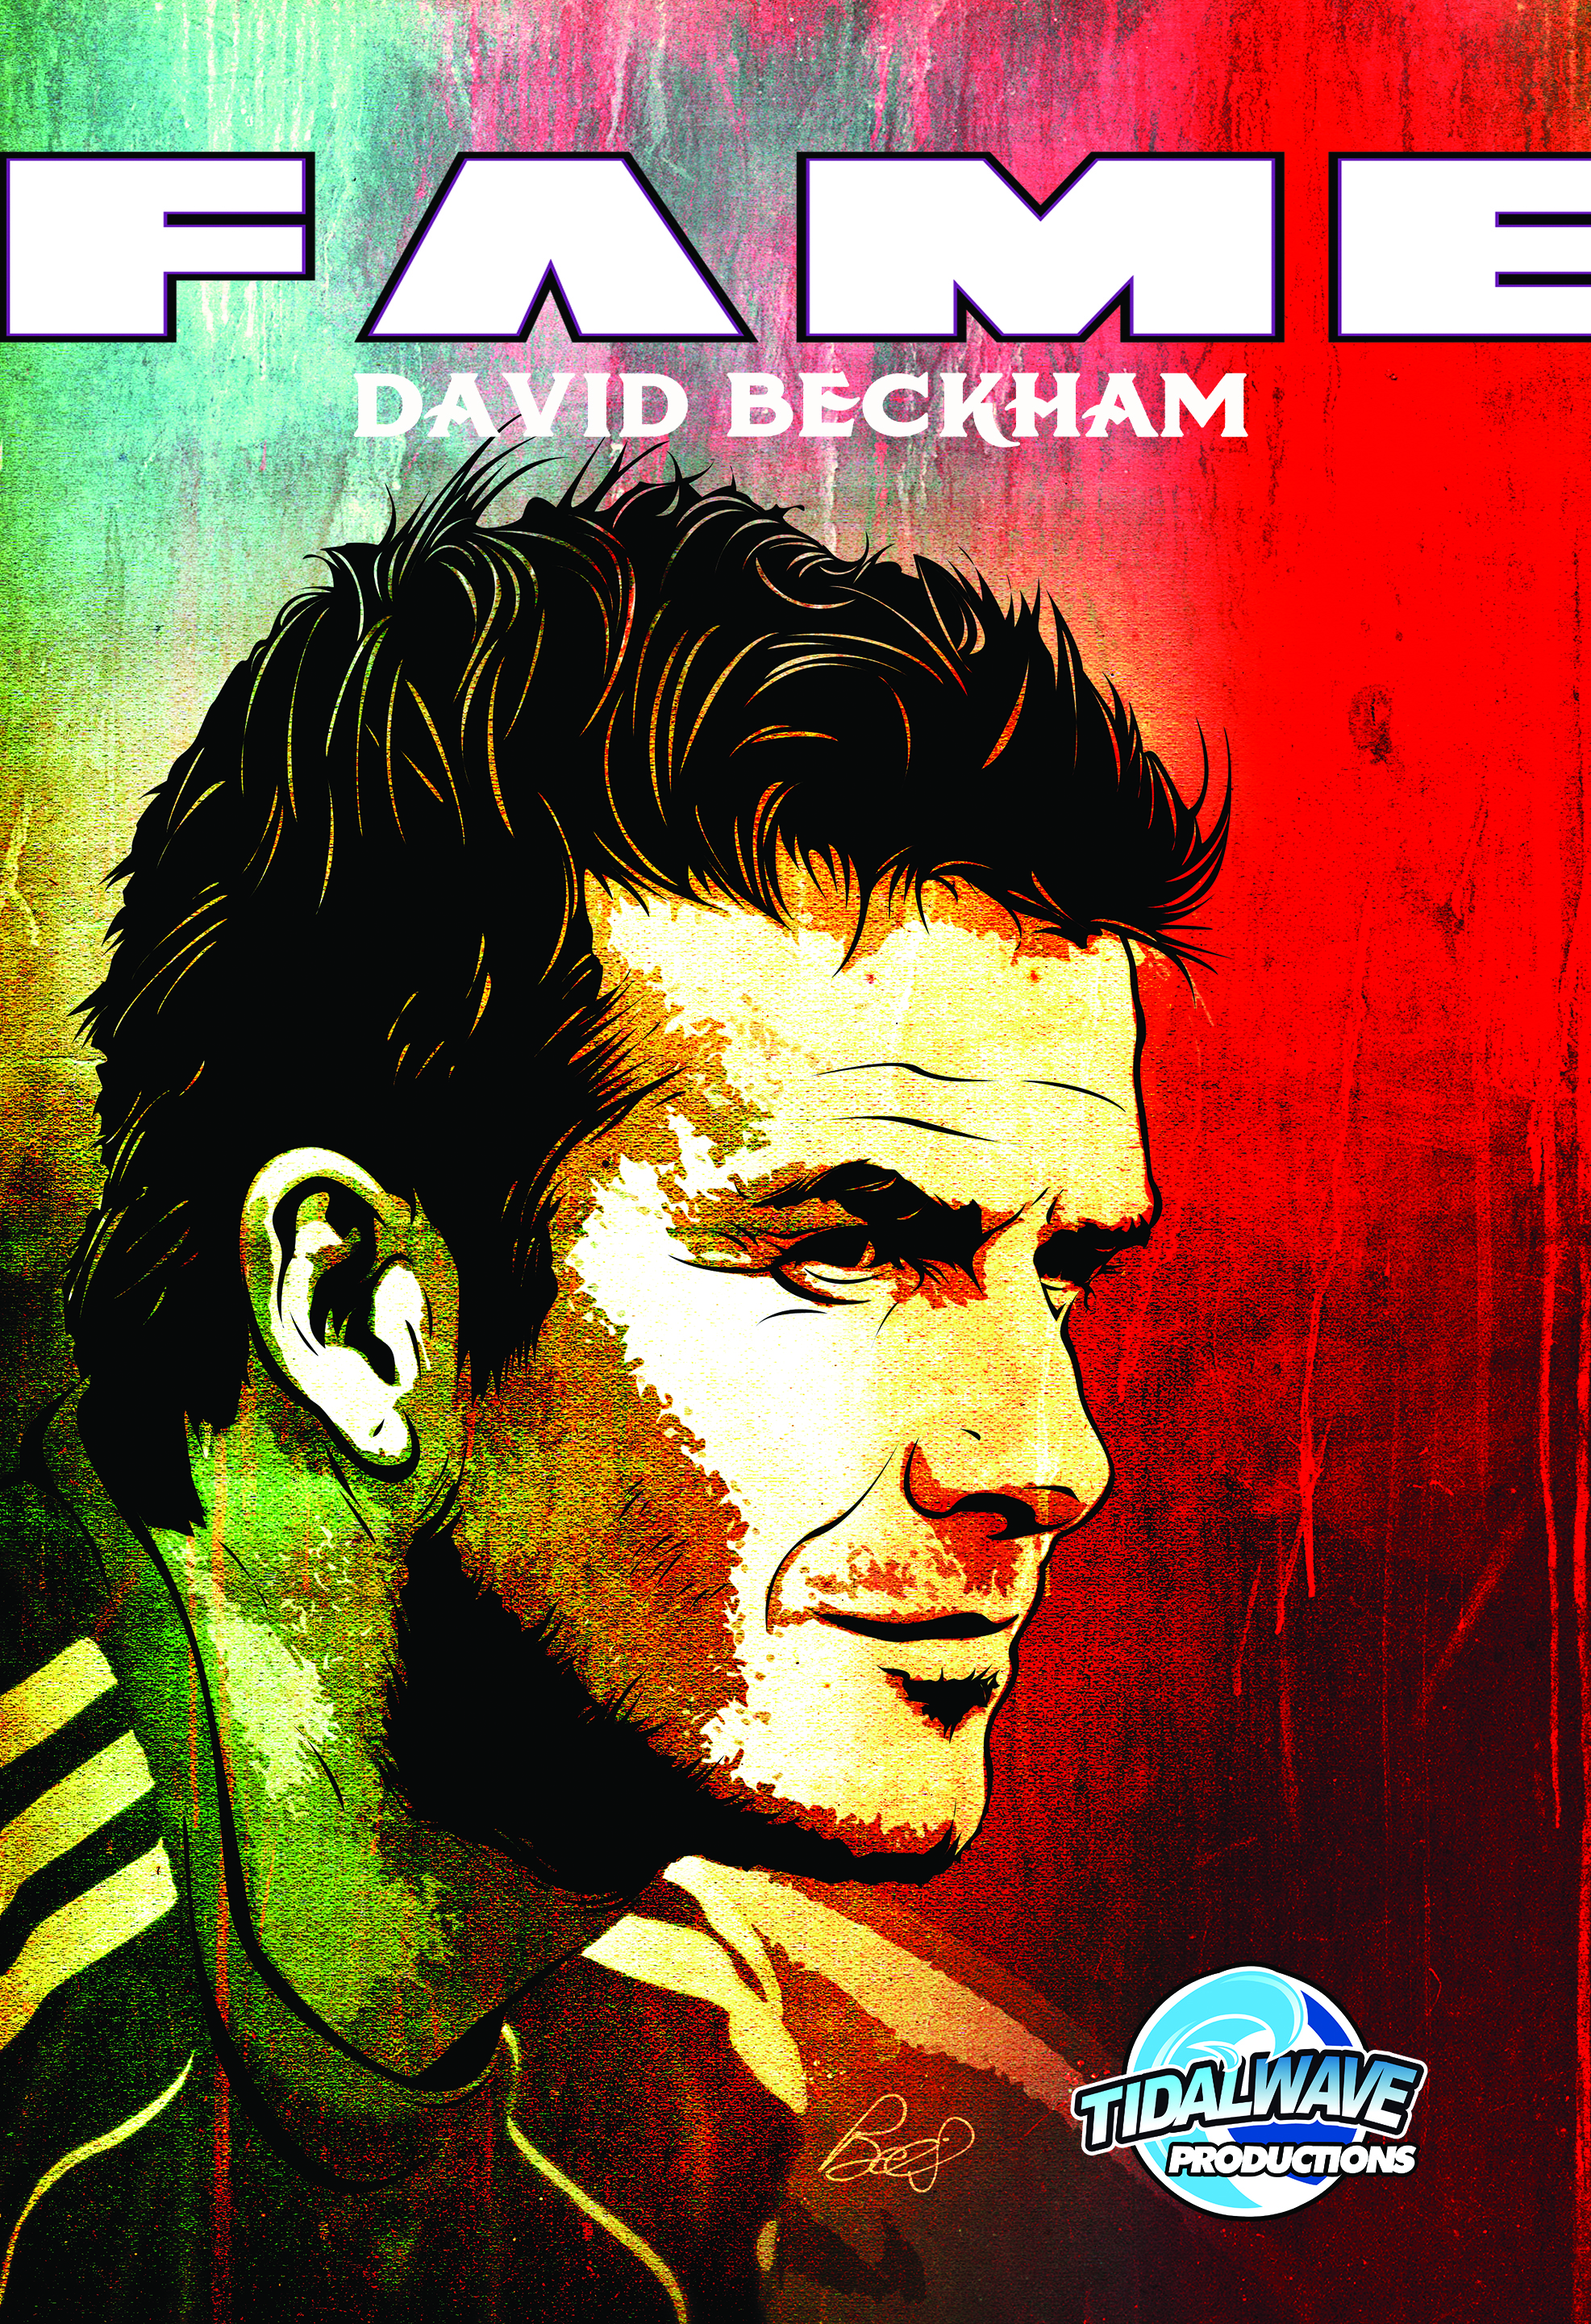 FAME David Beckham cover (TidalWave Productions)